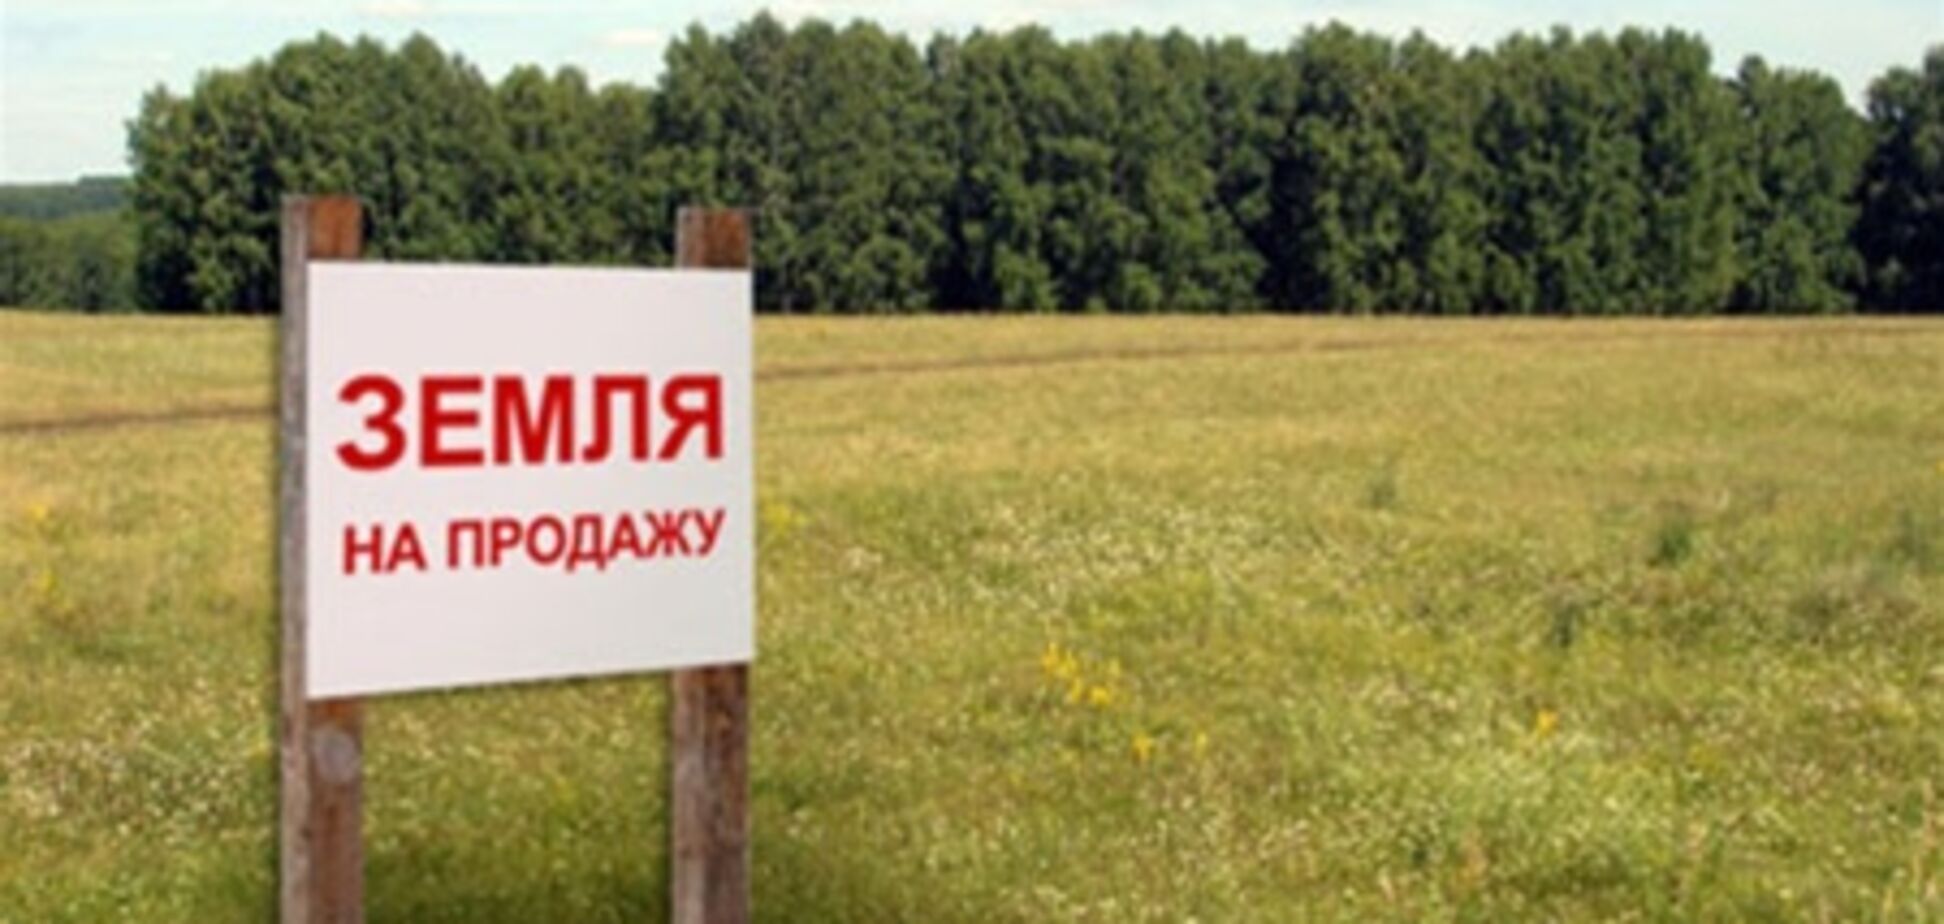 Европейские инвесторы хотят покупать украинскую землю